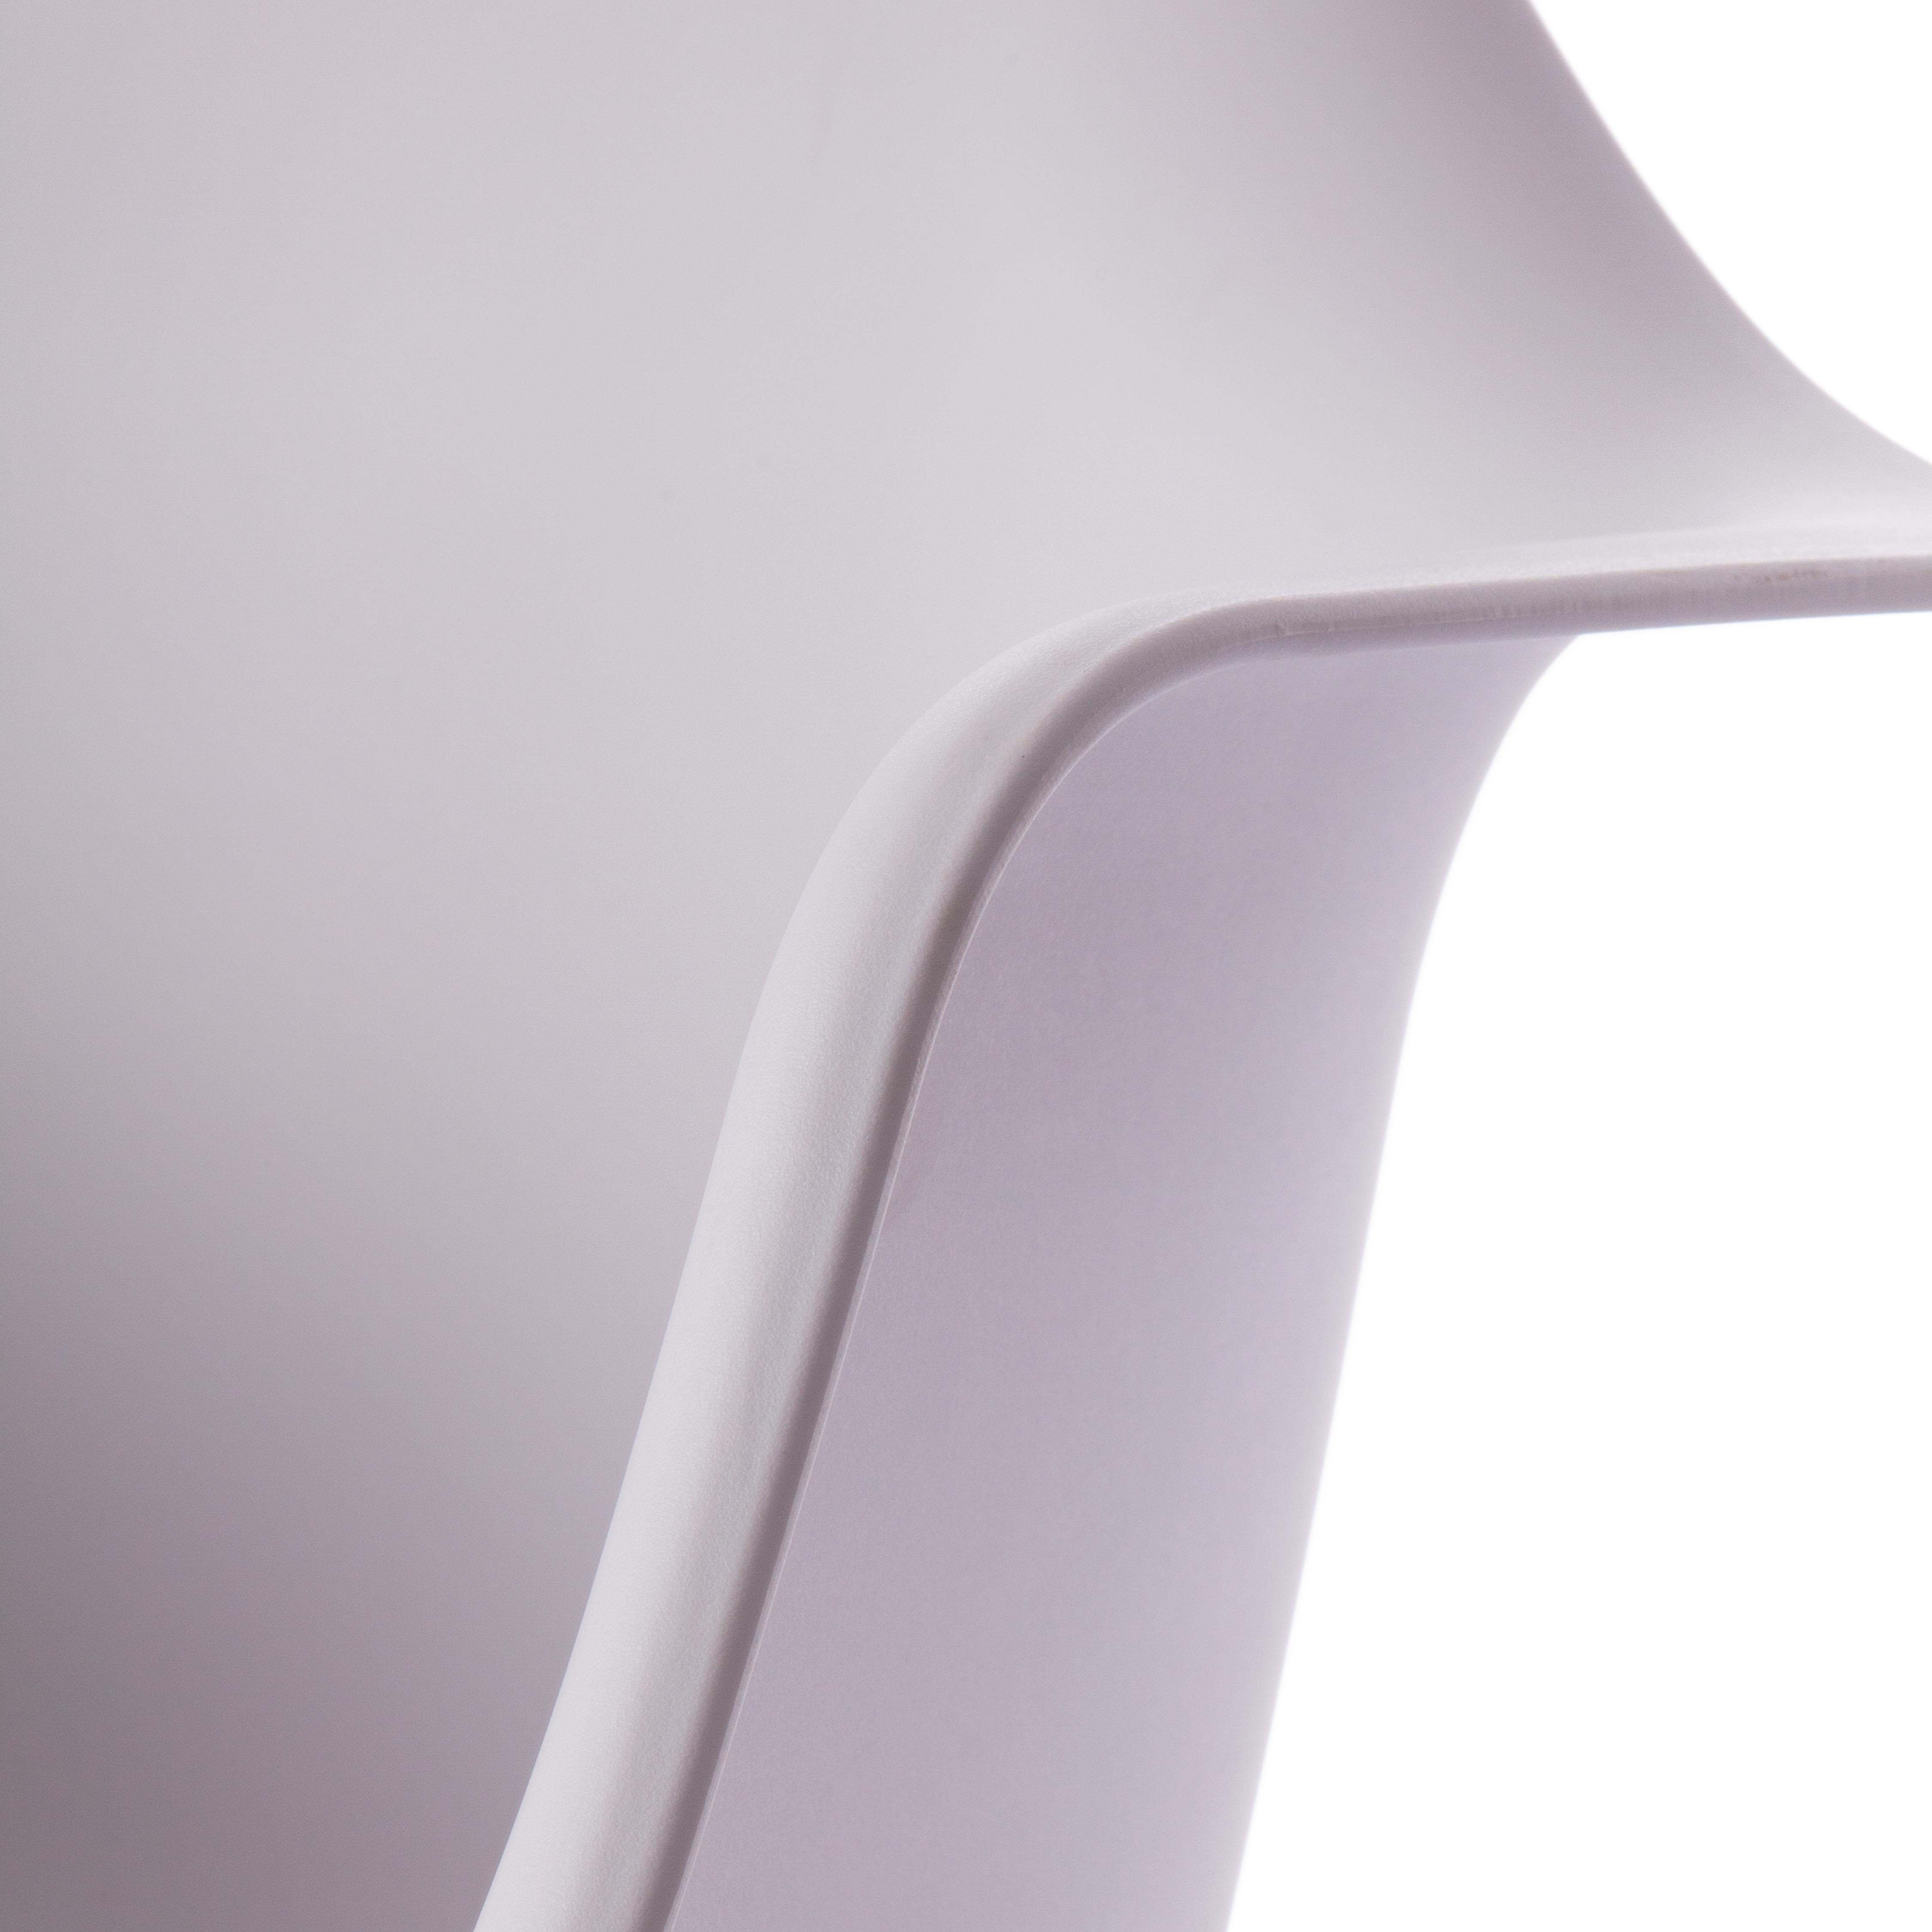 Кресло-качалка CINDY (mod. C1025A) / 1 шт. в упаковке пластик/металл/дерево, 65 х 61 х 74 см, белый 018 /натуральный